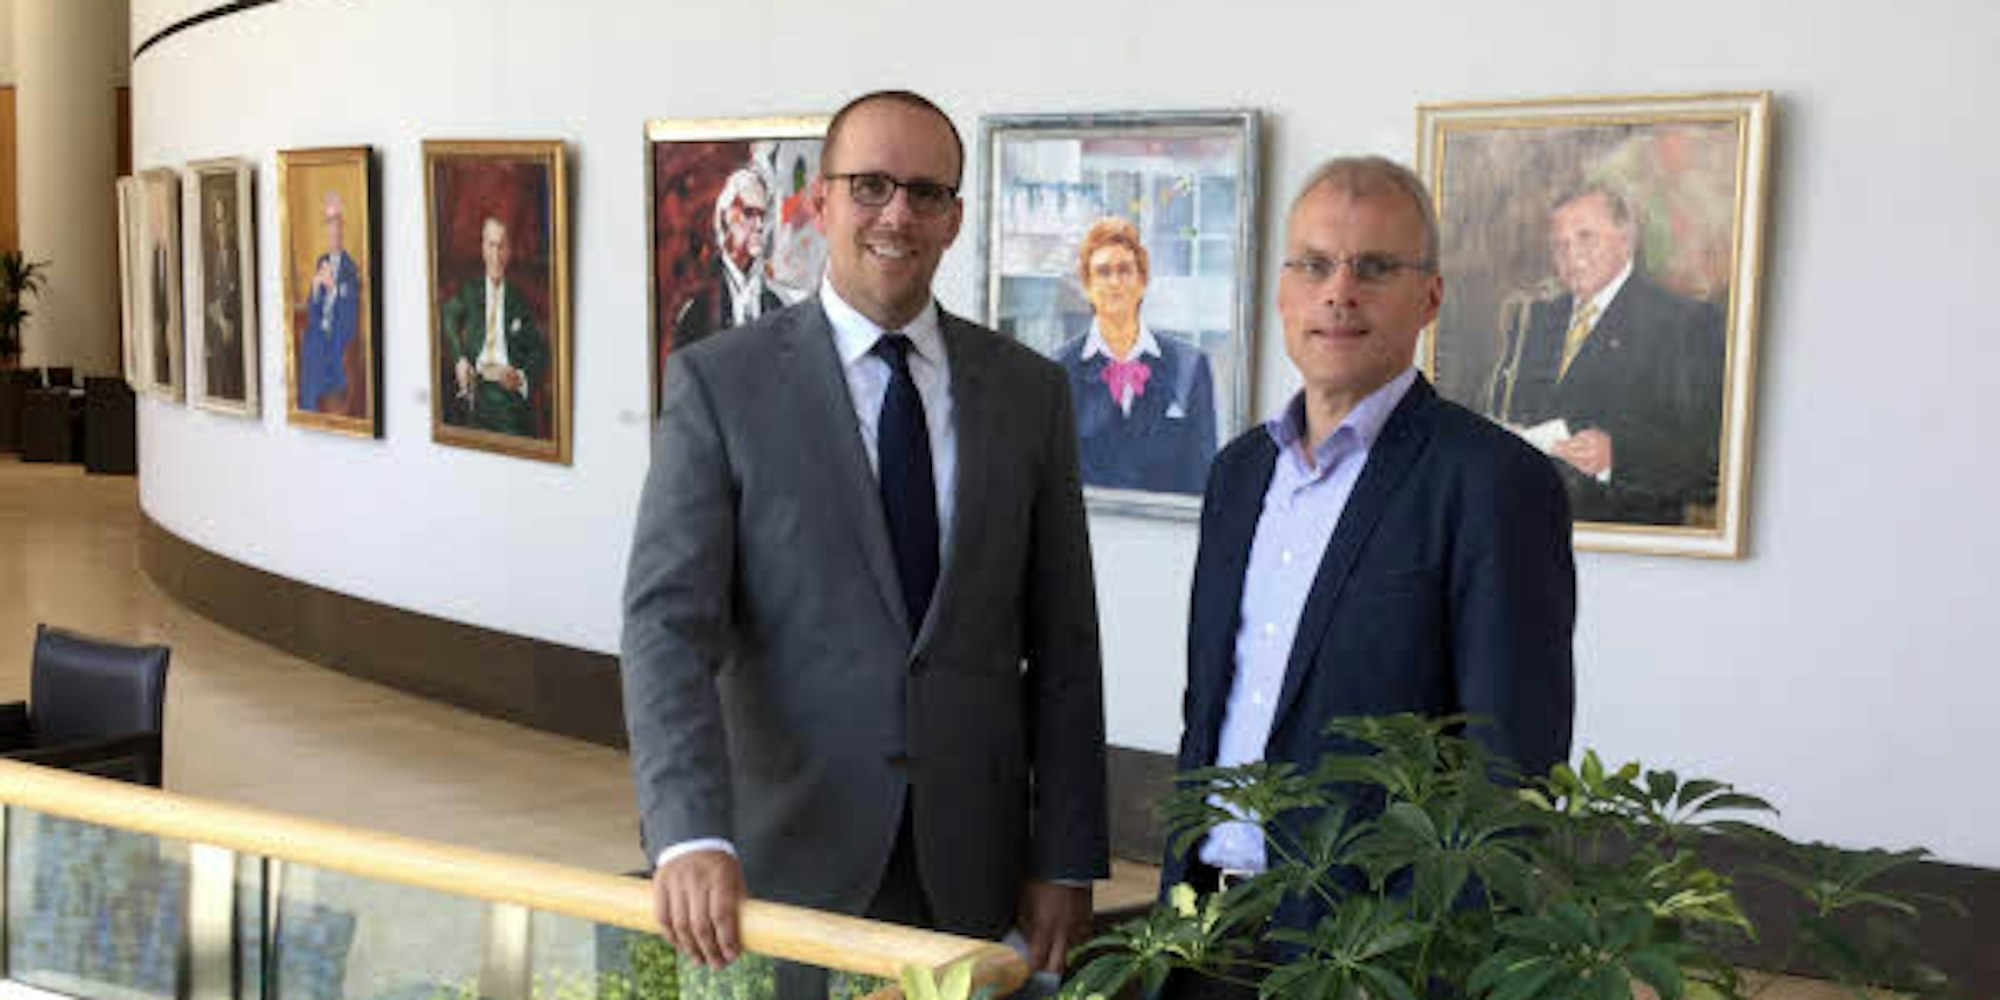 Gebäude mit Aussicht und Kunst: Jörn Freynick (l.) und Oliver Krauß vor der Galerie der bisherigen Präsidentinnen und Präsidenten des Landtags Nordrhein-Westfalen.